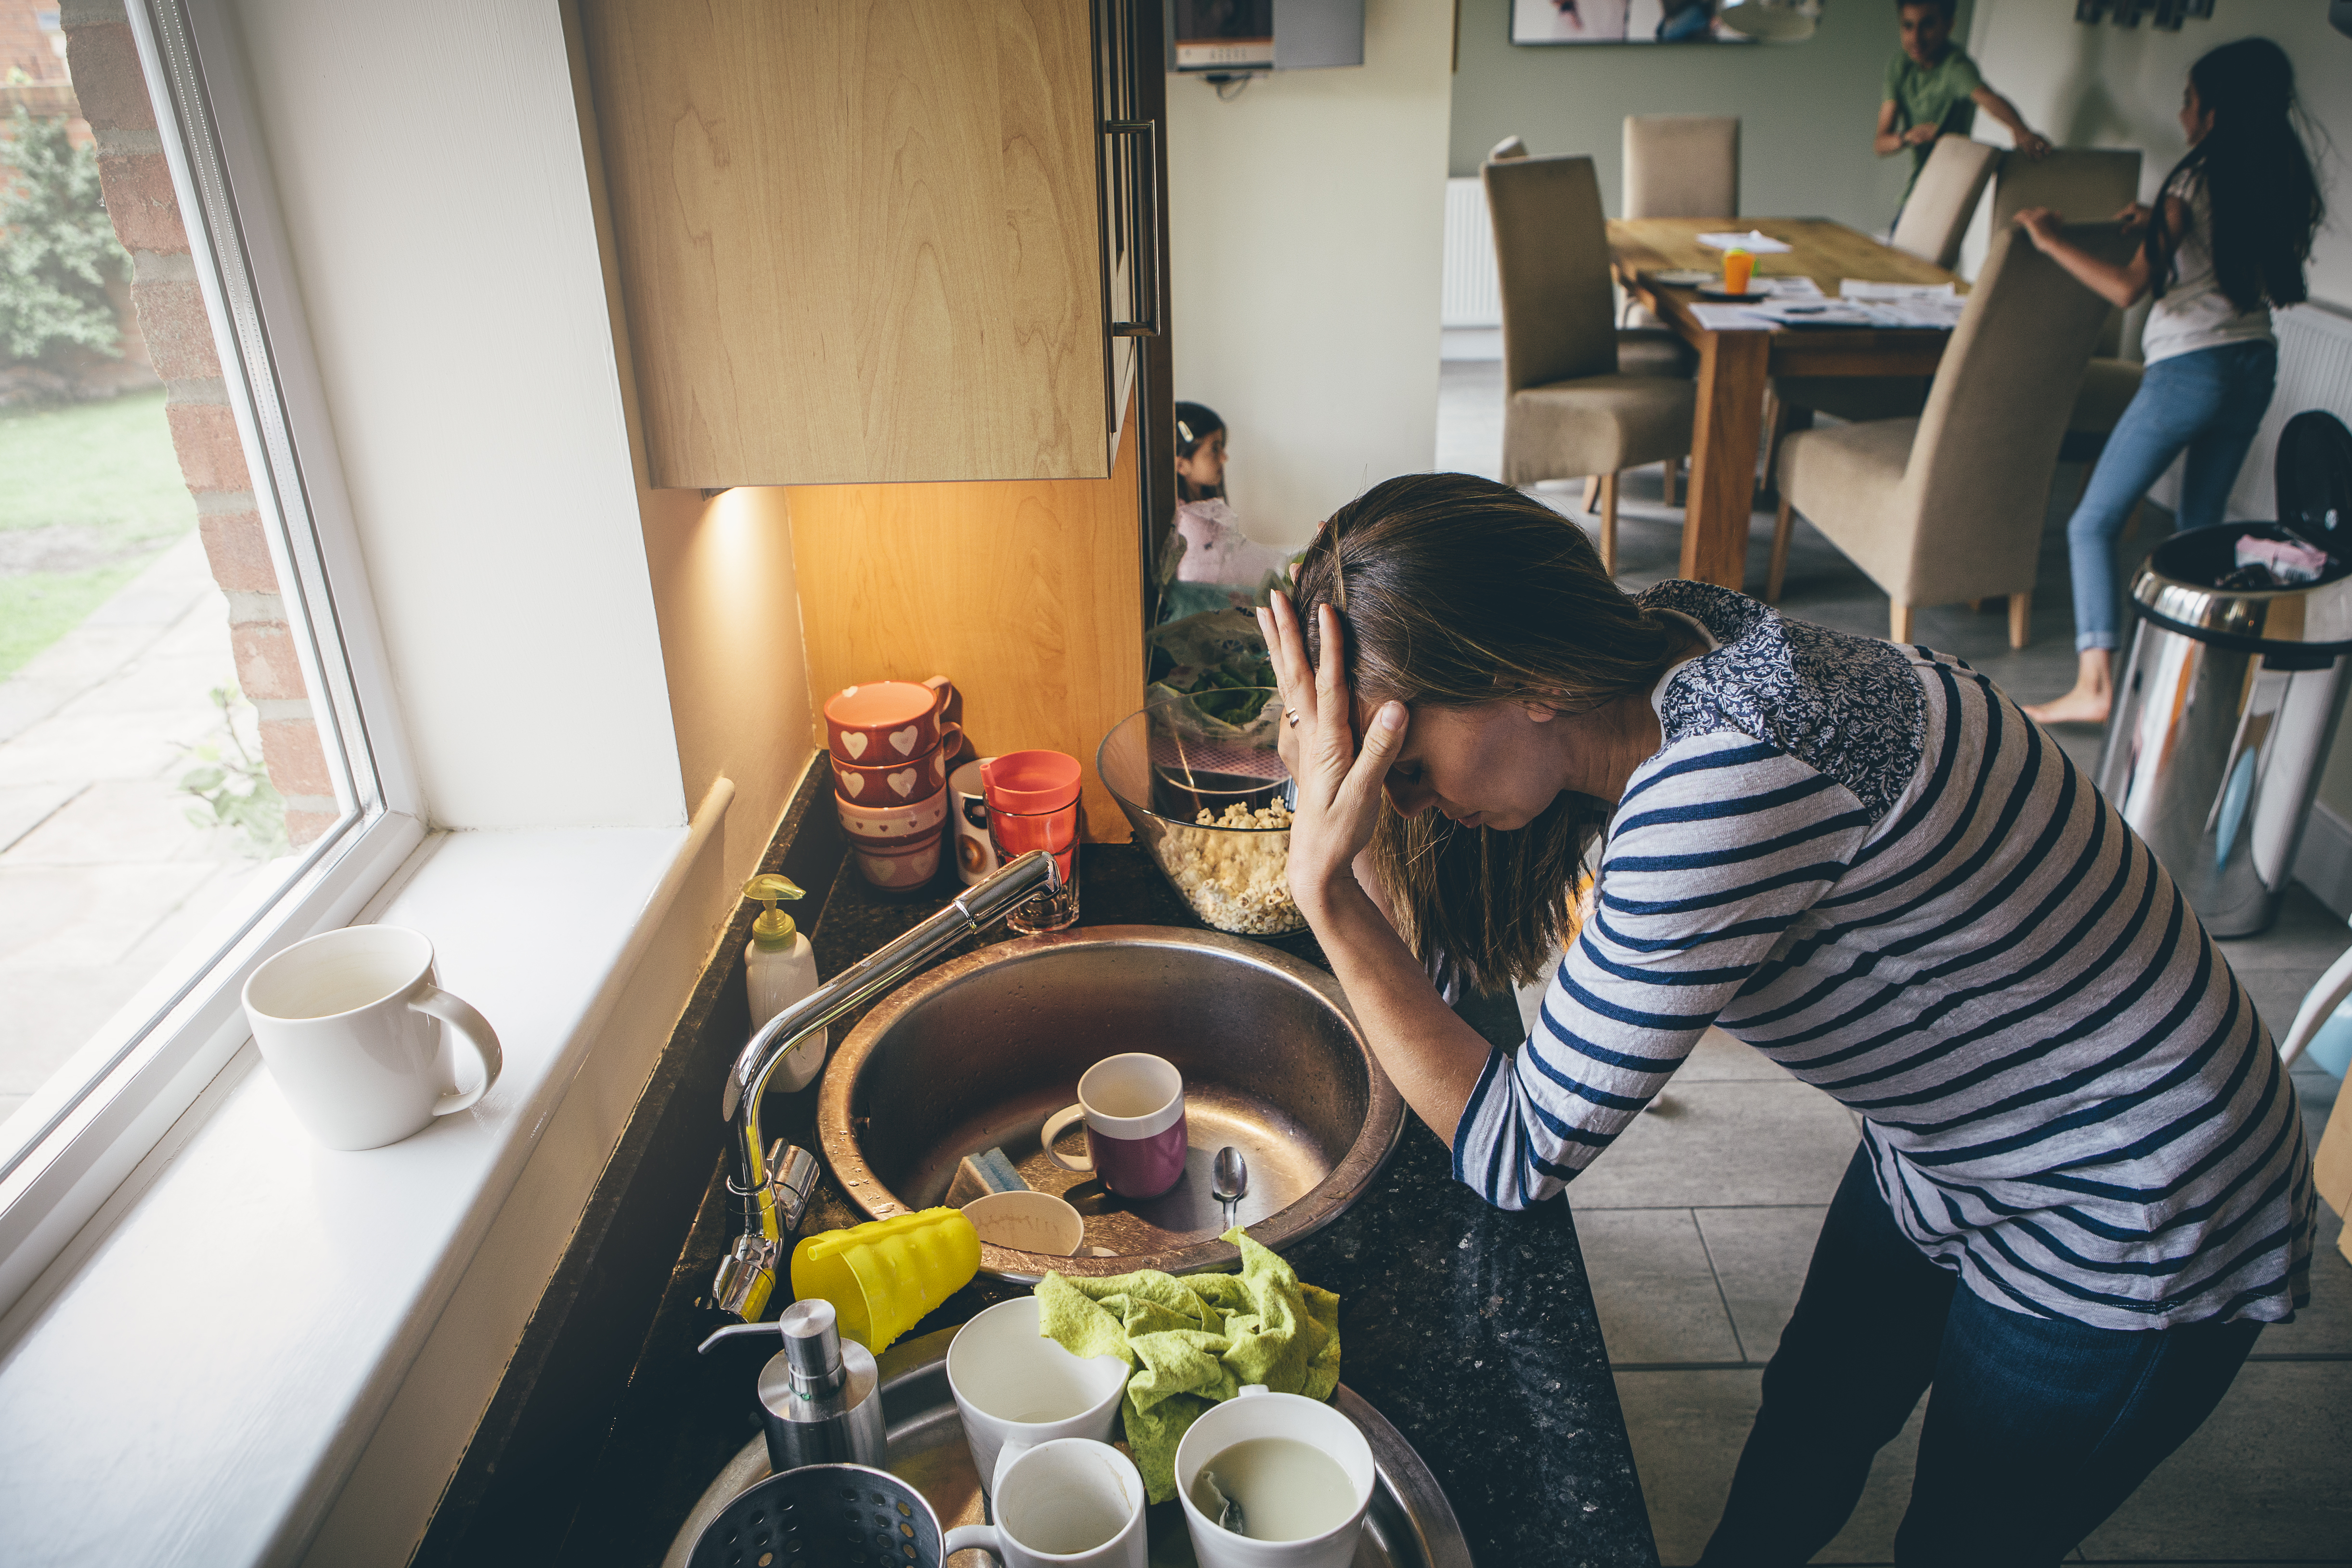 Une femme appuyée sur un comptoir de cuisine, la main sur le front | Source : Shutterstock